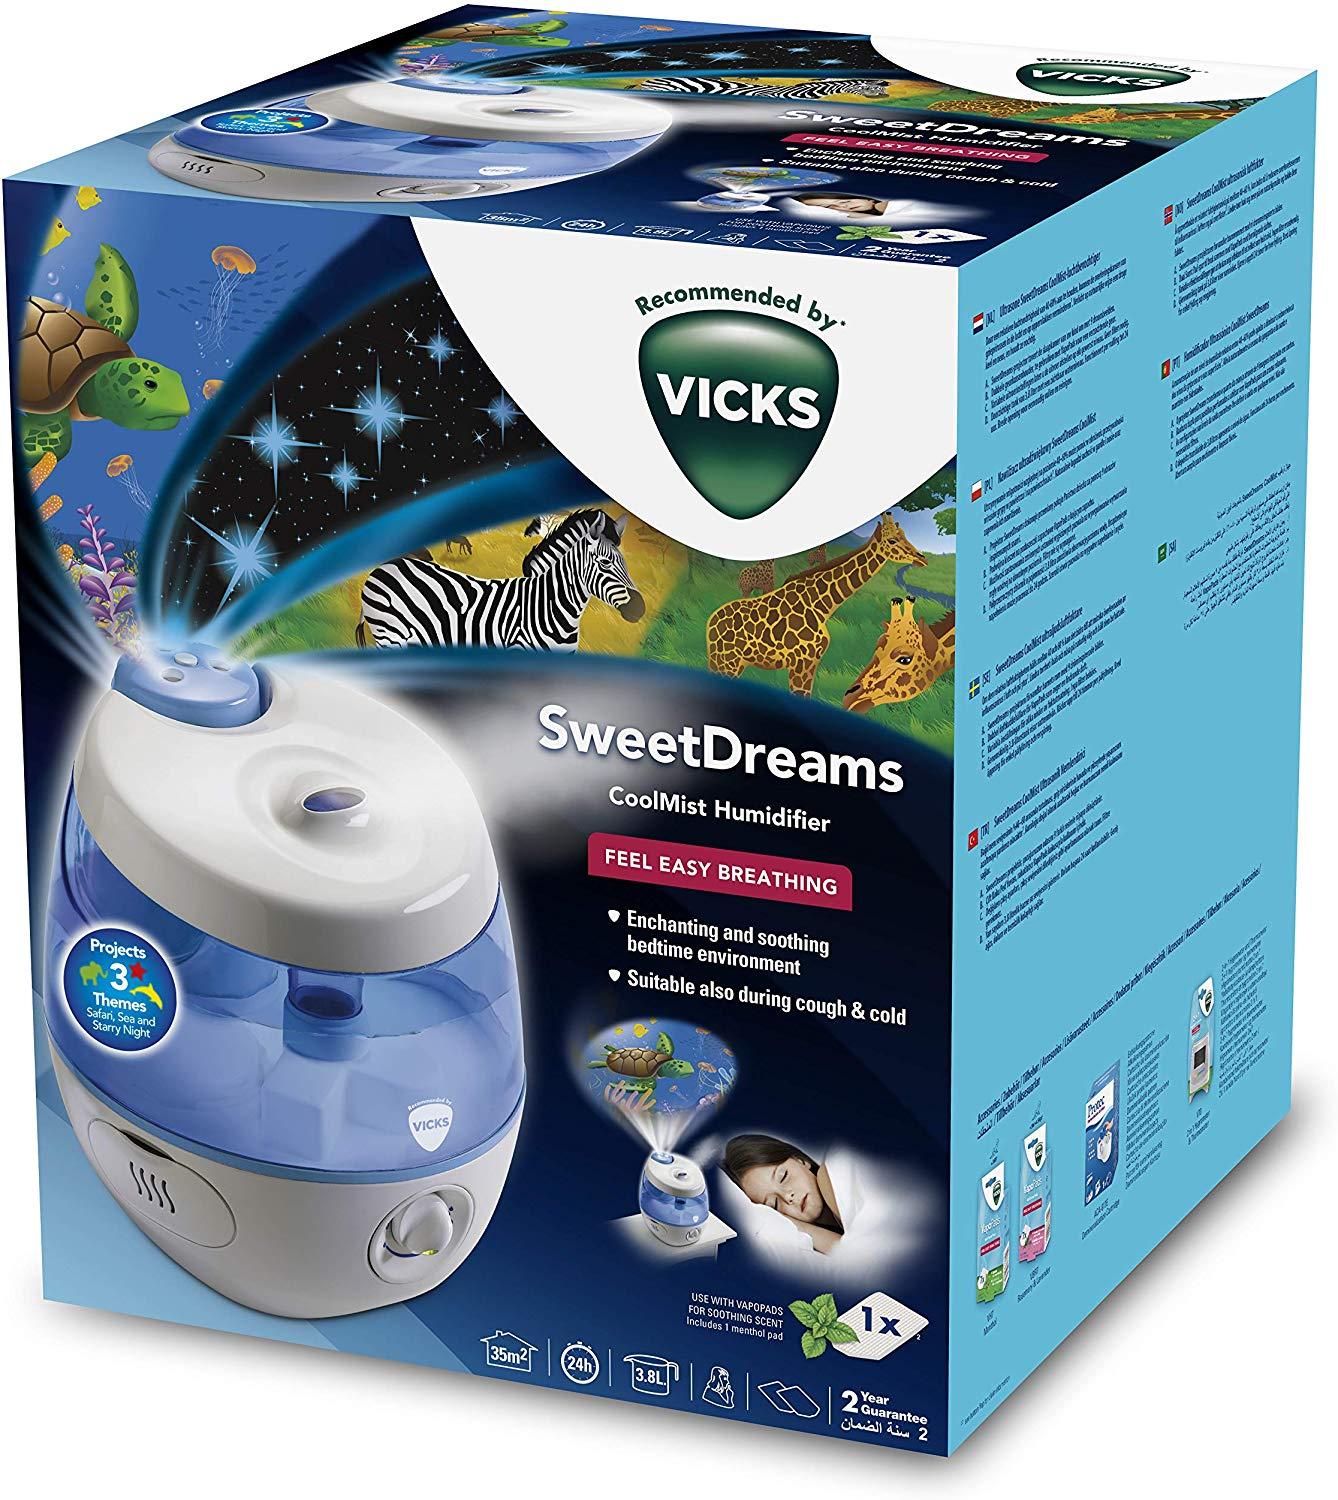 Vicks - Umidificador com projetor de imagem VUL575 Sweet Dreams Anne Claire Baby Store 